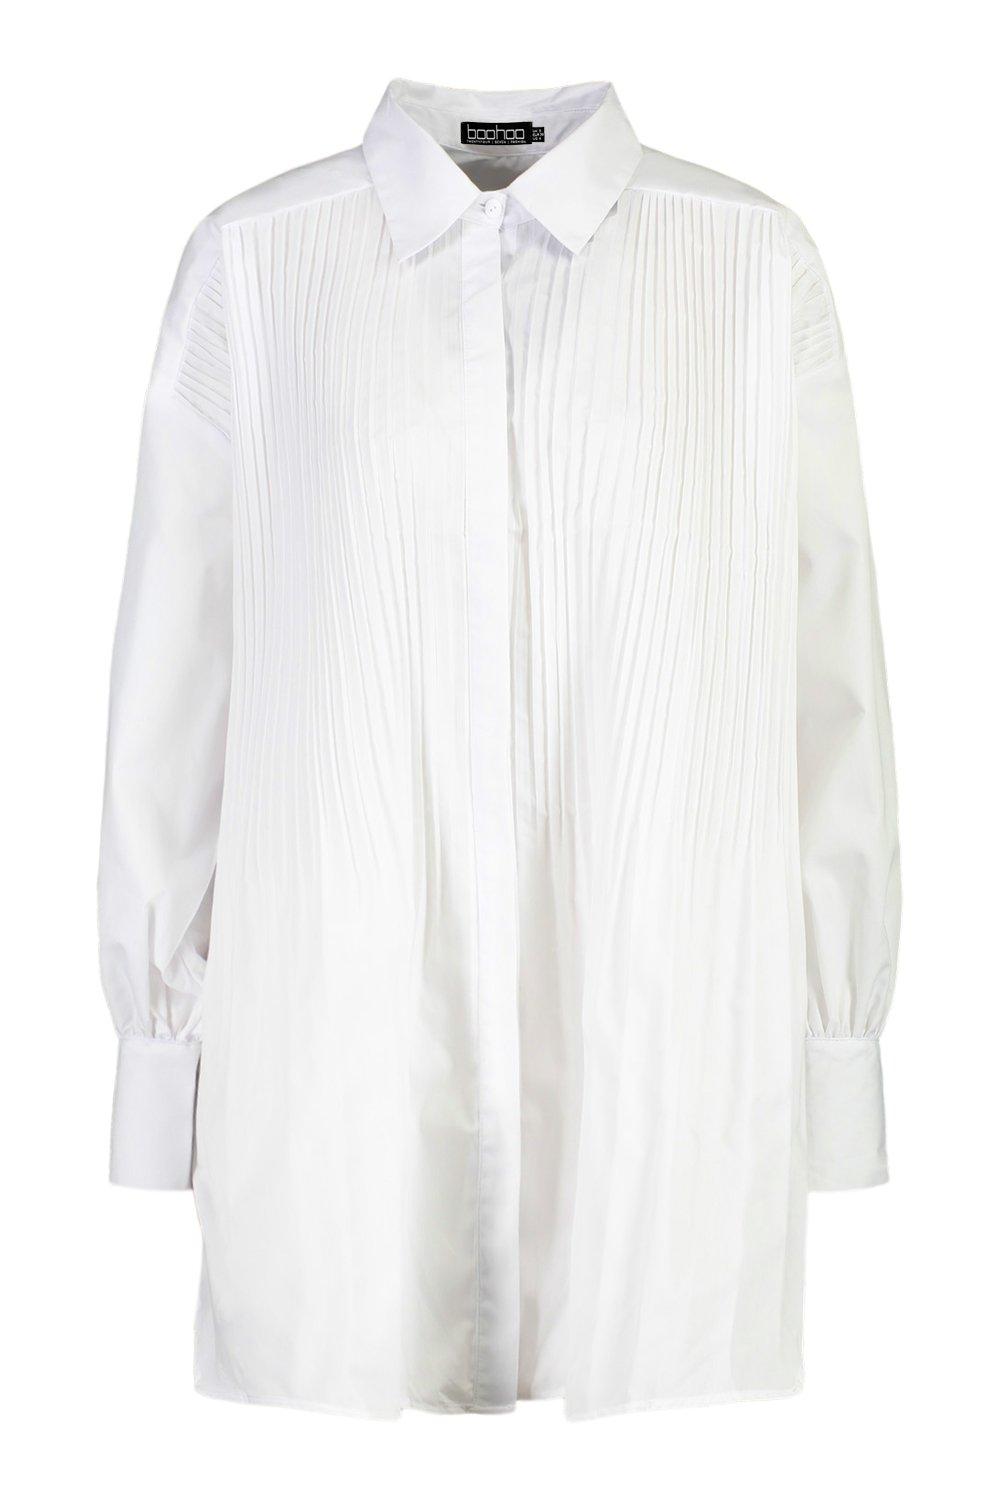 Camisa blanca súper ancha plisada por | boohoo